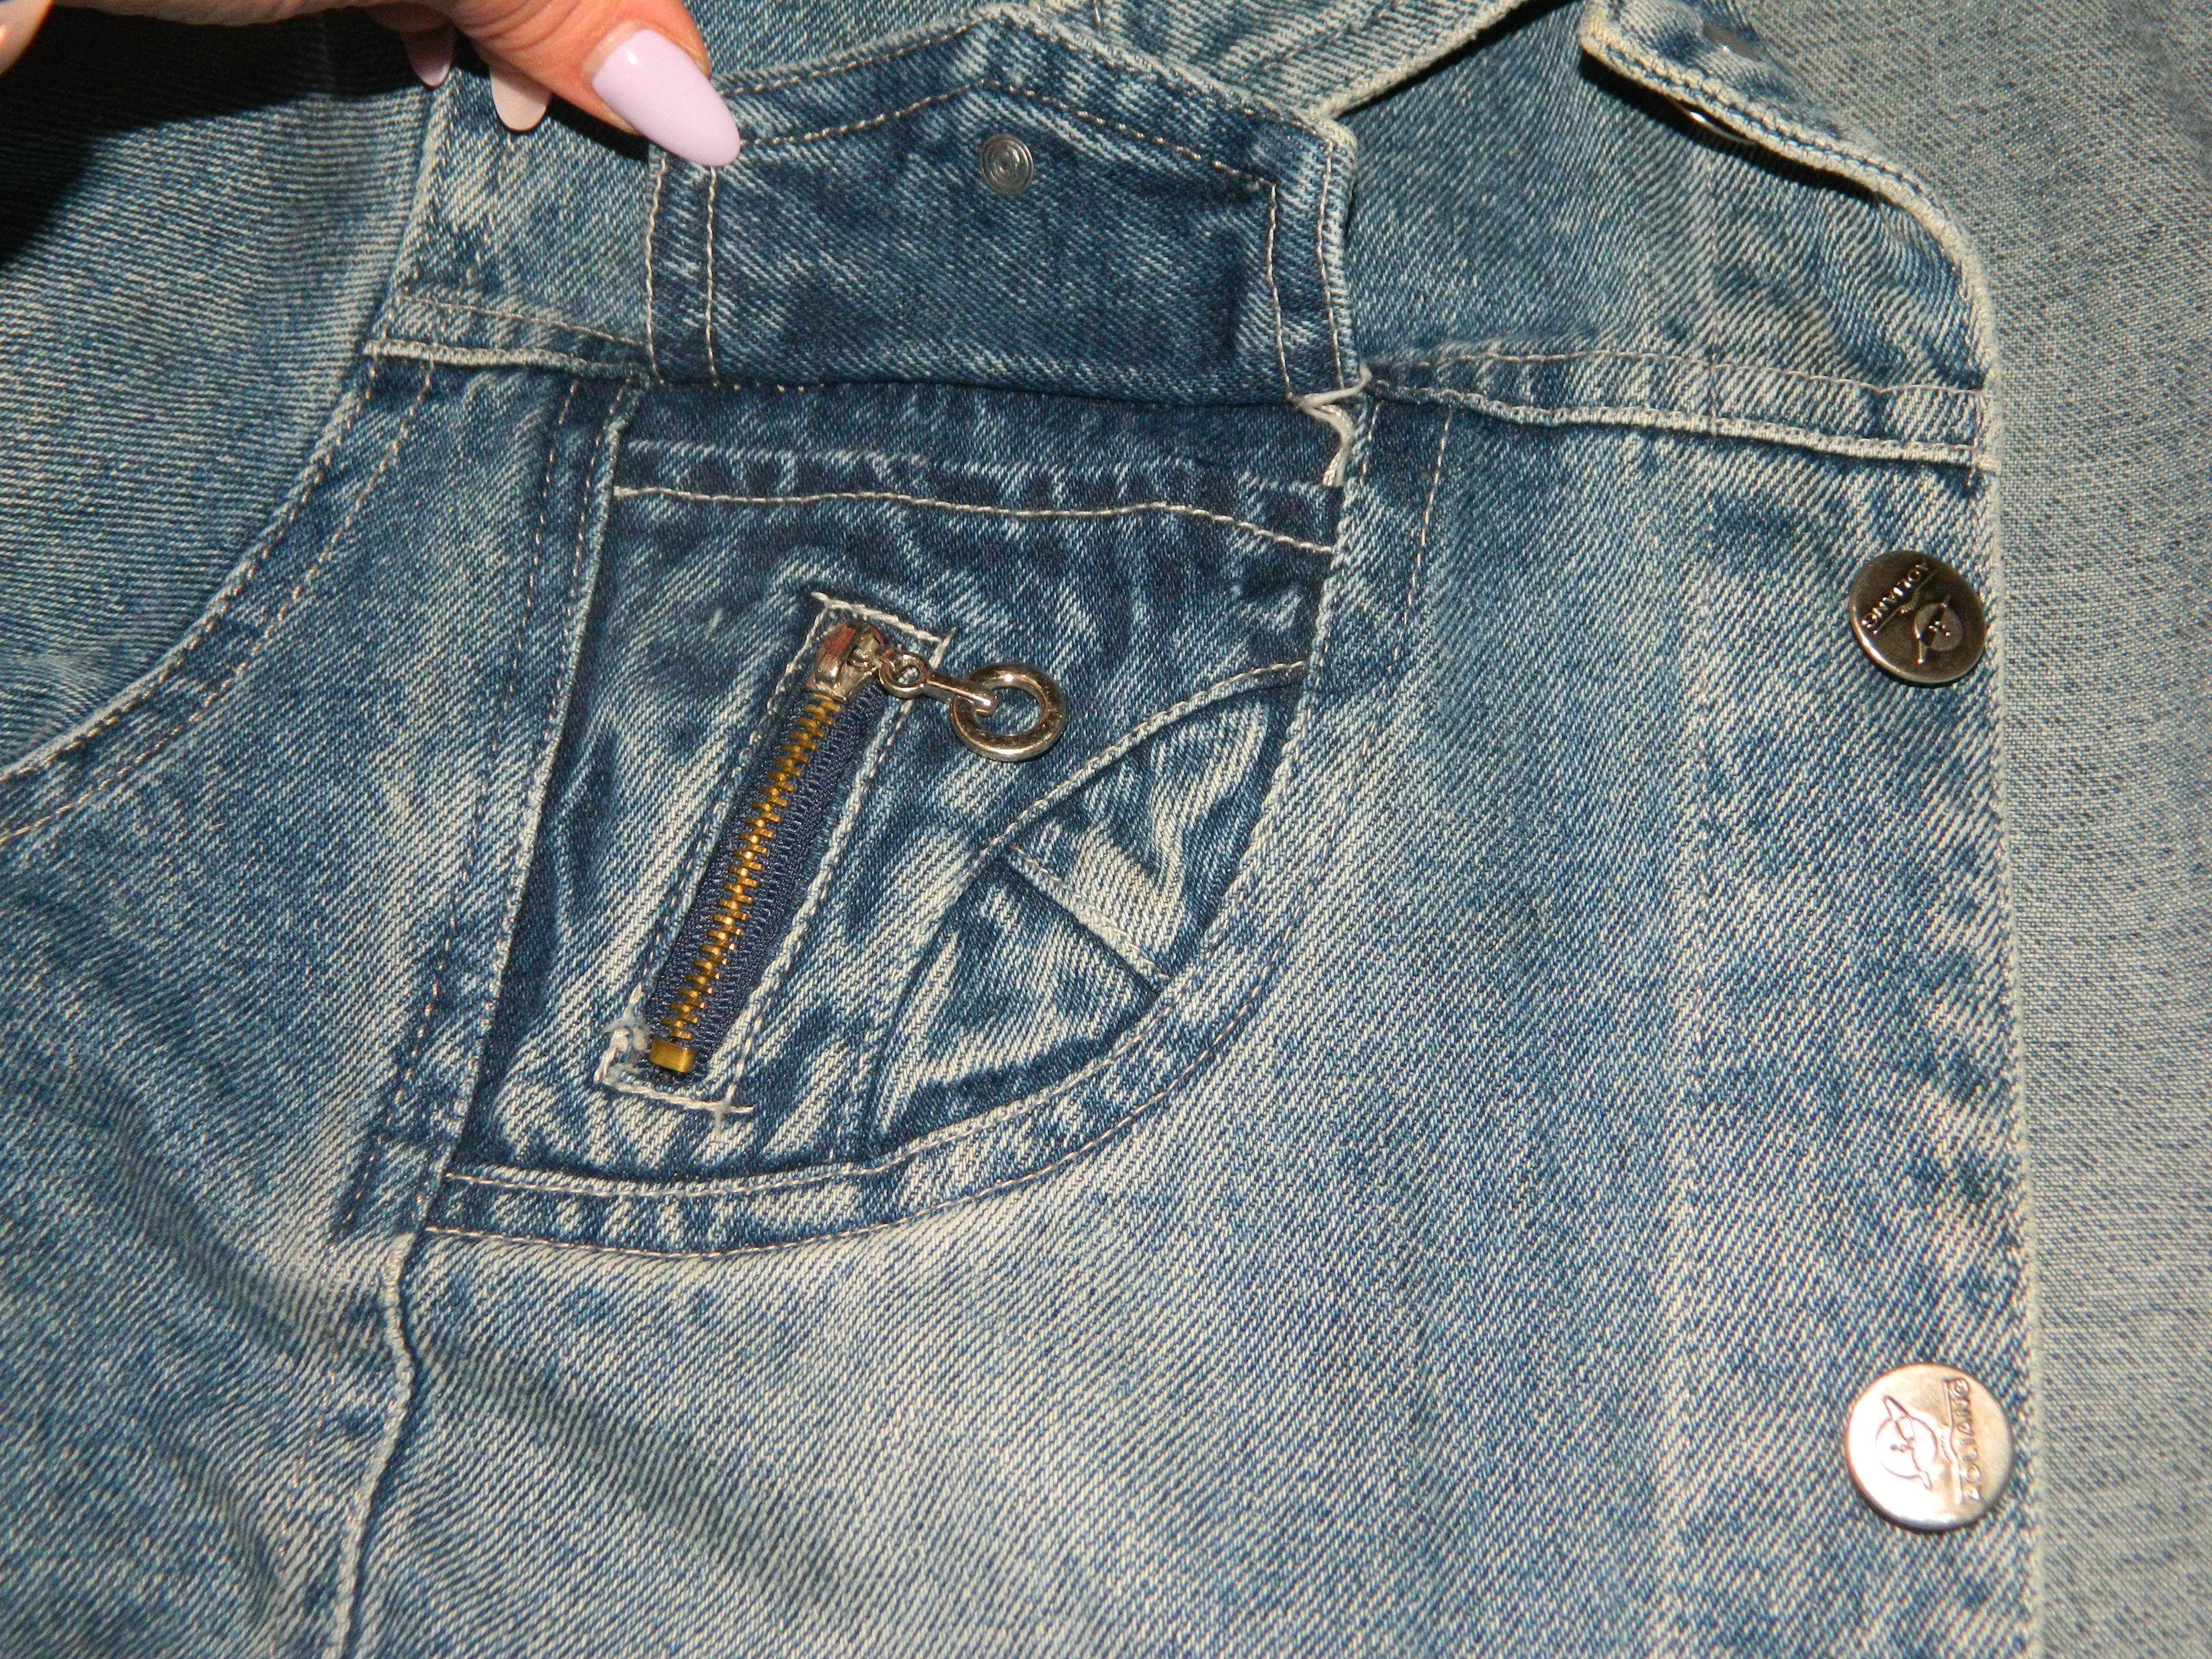 Р. 44-46 Куртка джинсовая мужская (можно на мальчика подростка)